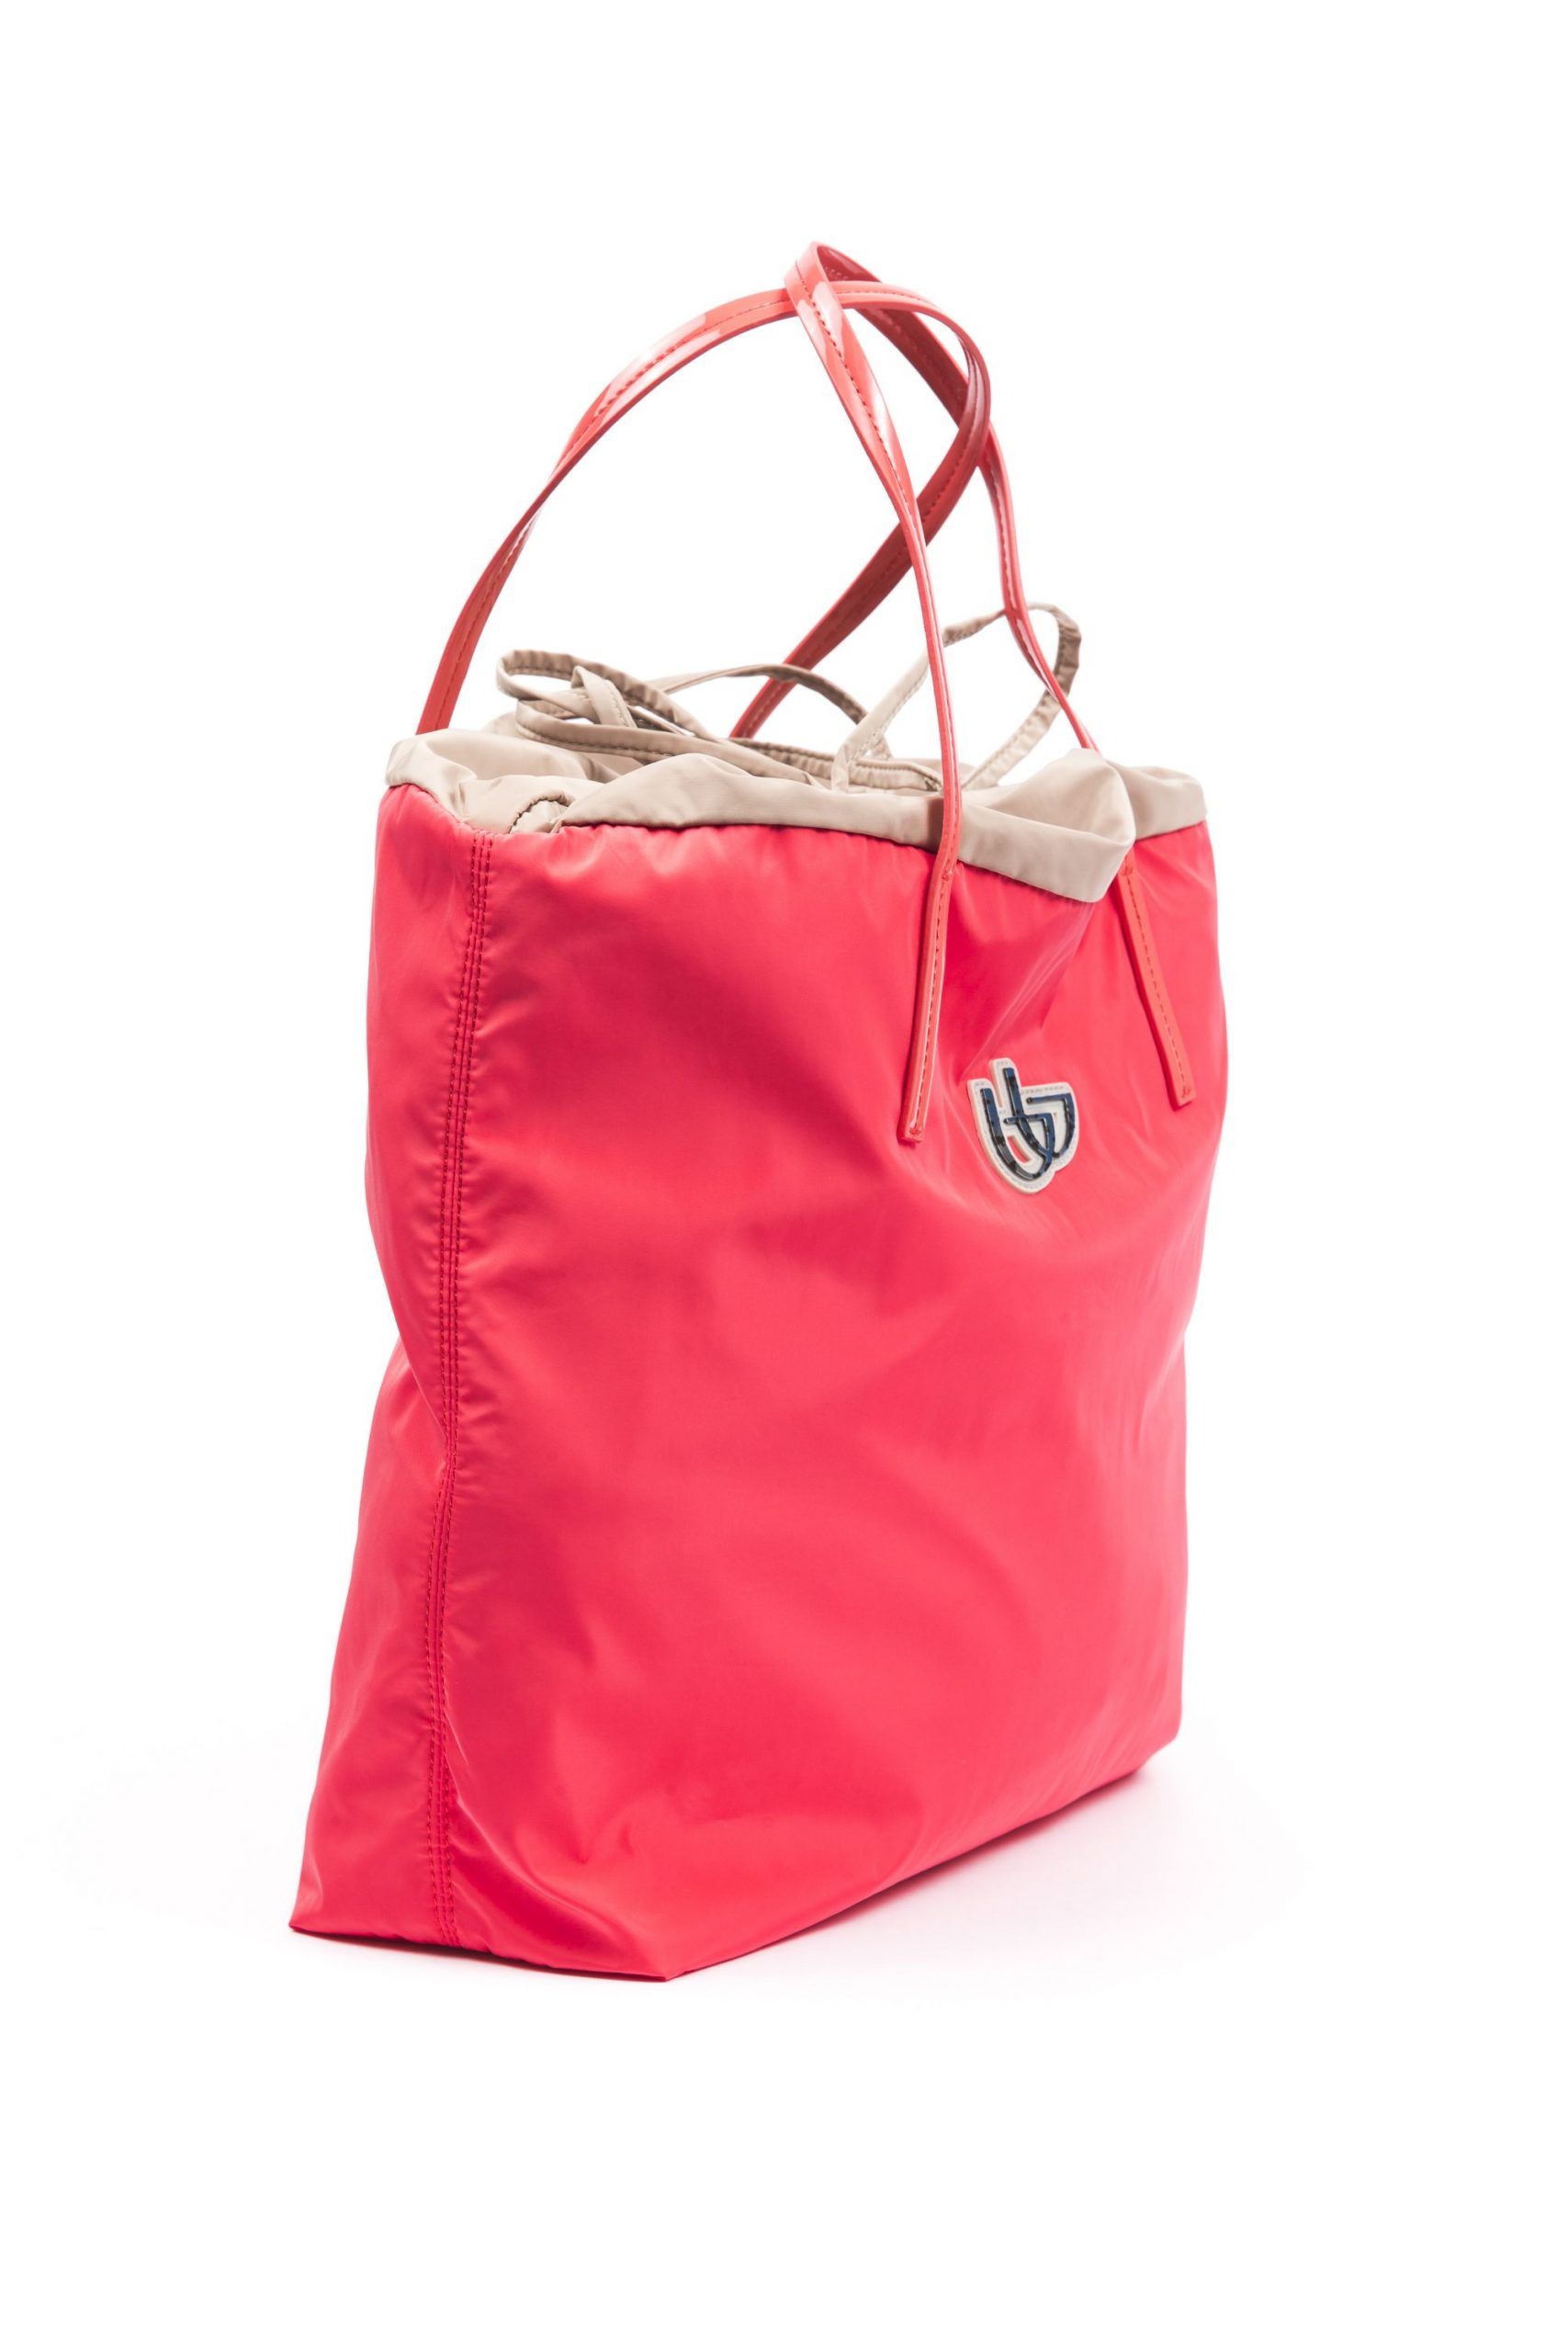 <p>Damen-Shopping-Handtasche aus Stoff und synthetischem Lackleder. Inklusive Staubbeutel mit Logo. Abmessungen: 36 cm x 16c m x 32 cm</p>